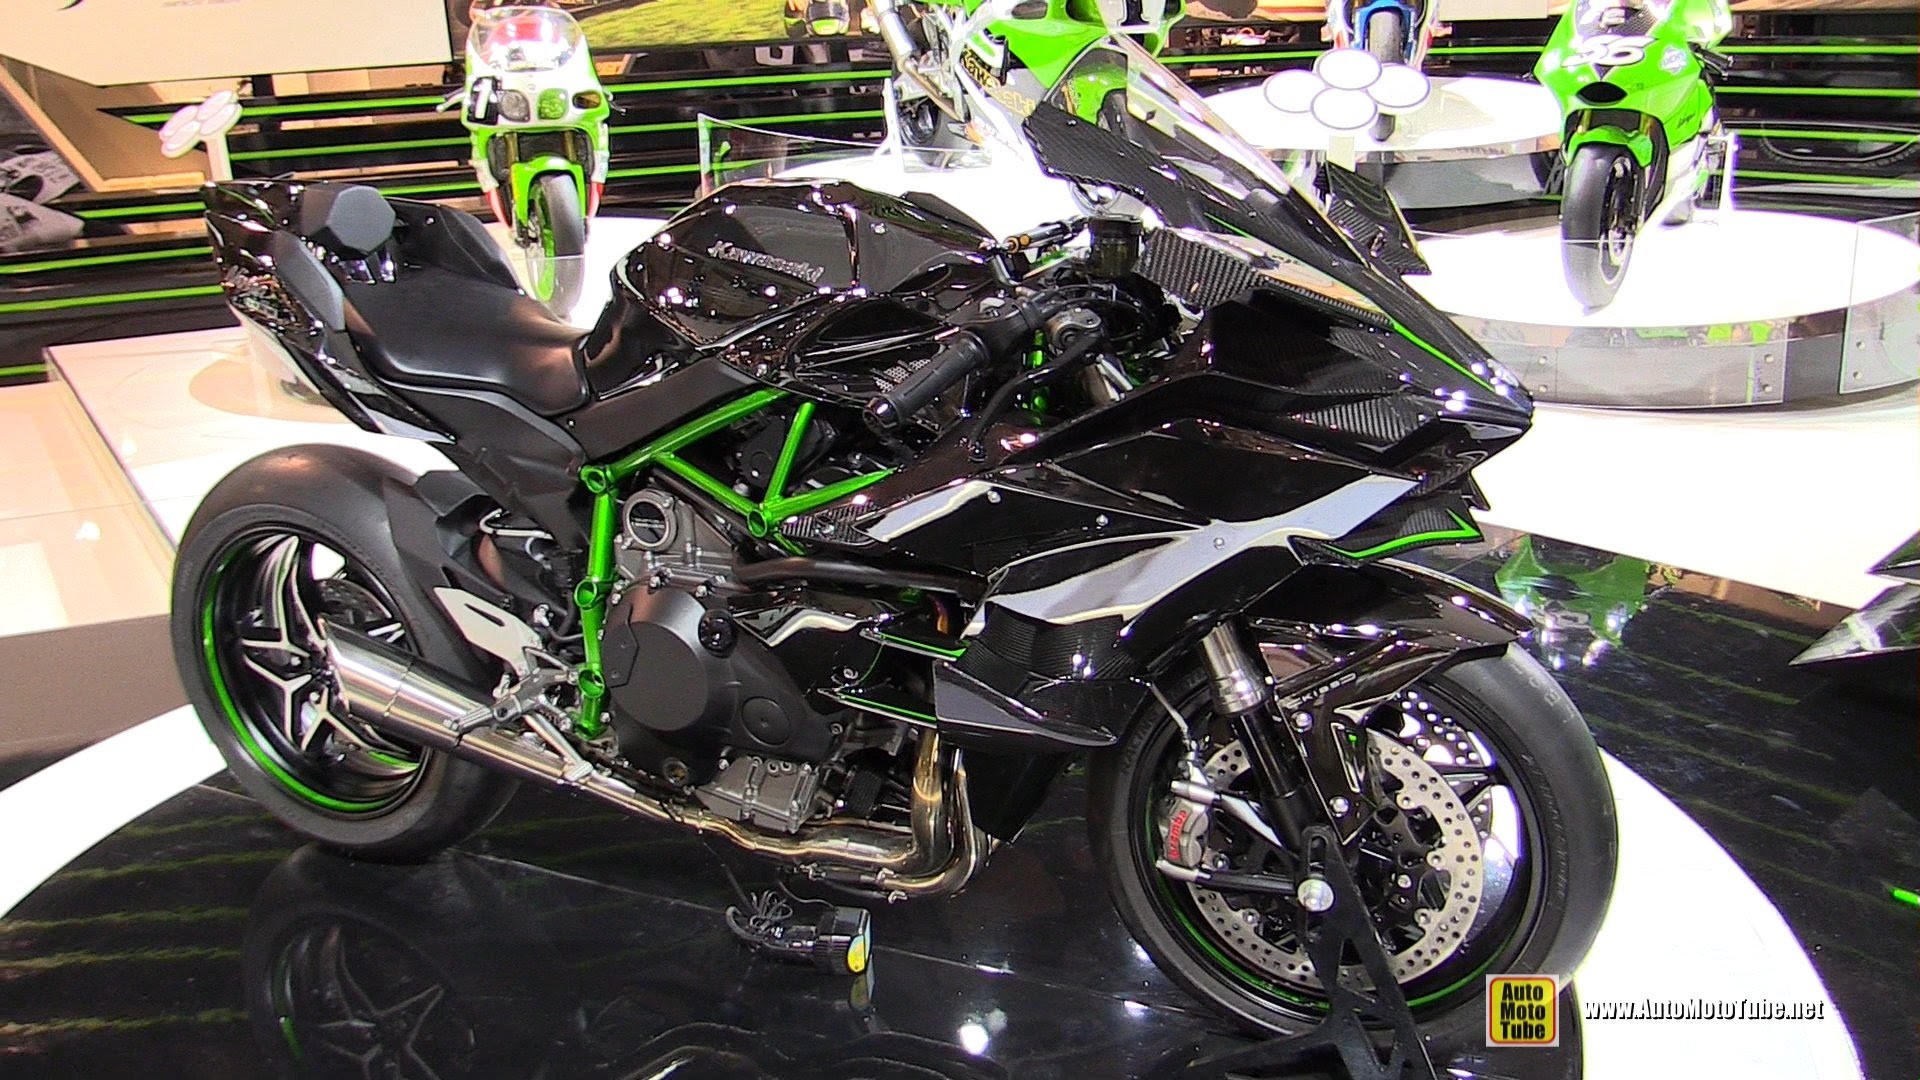 1920x1080 2015 Kawasaki Ninja H2-R Super Charged - Walkaround-Debut at 2014 EICMA  Milan Motorcycle Exhibition - YouTube